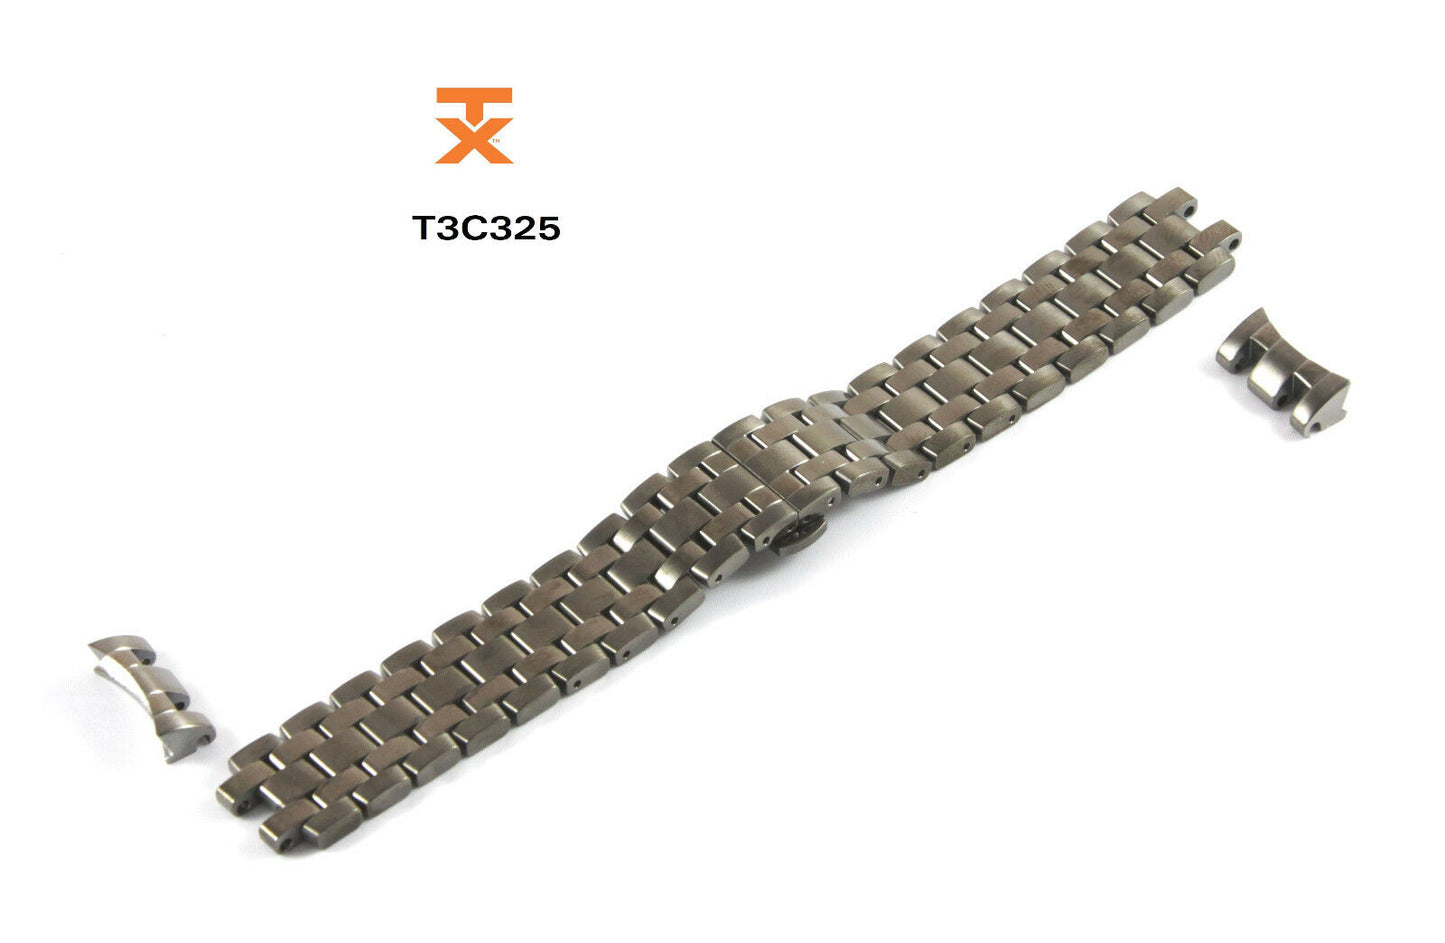 Timex TX Ersatzarmband T3C325 für alle Modelle der TX 730 Serie - Ersatzband